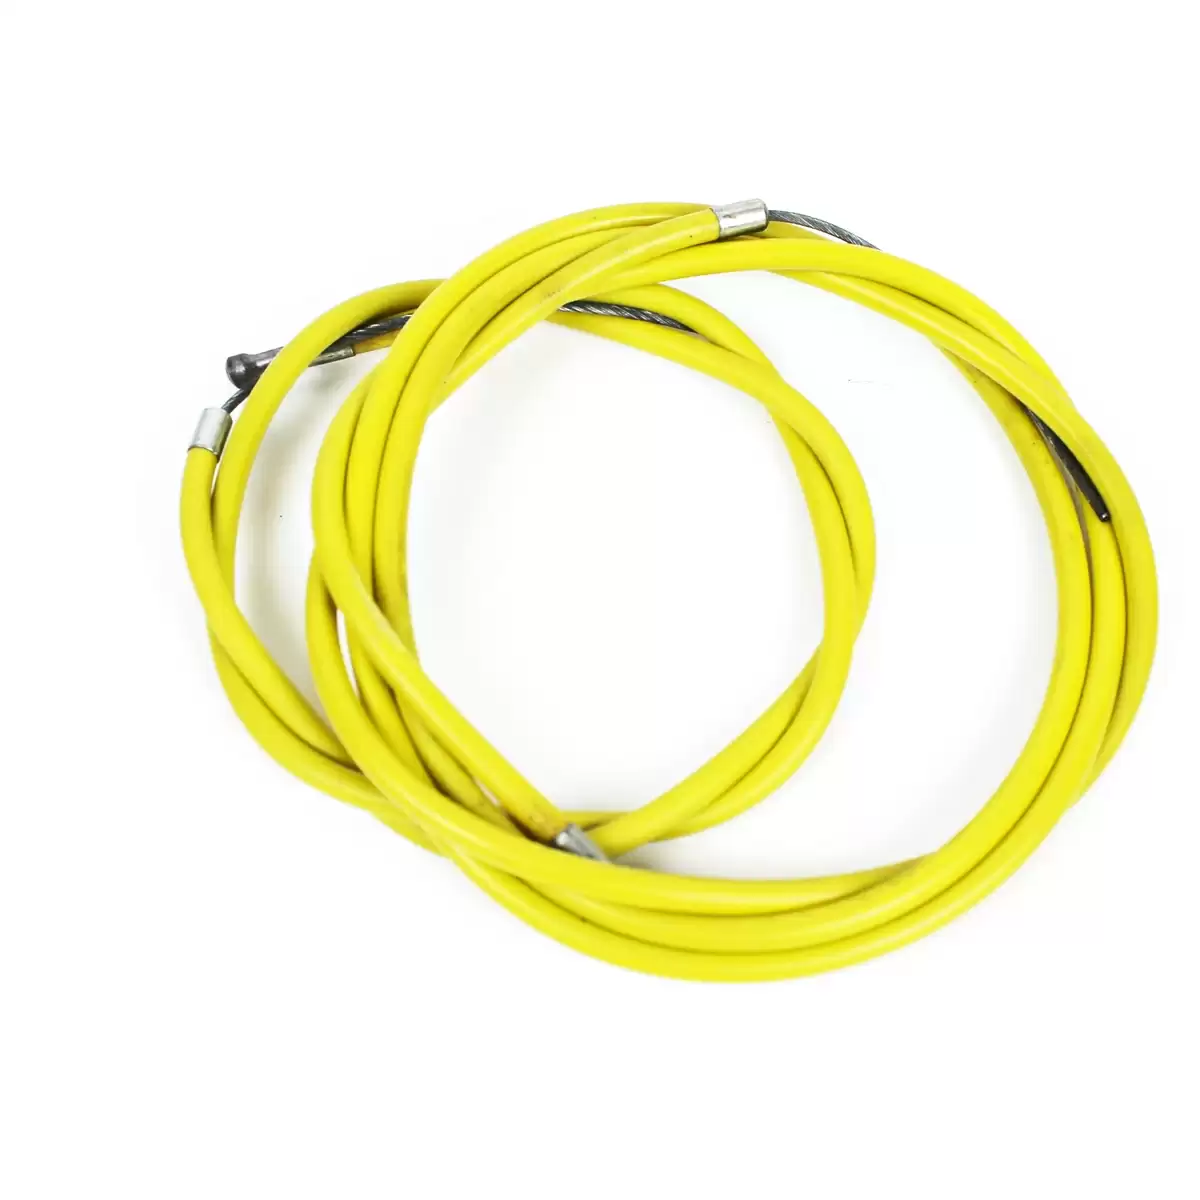 Kit carcasa y cable freno delantero y trasero vintage heroico amarillo - image